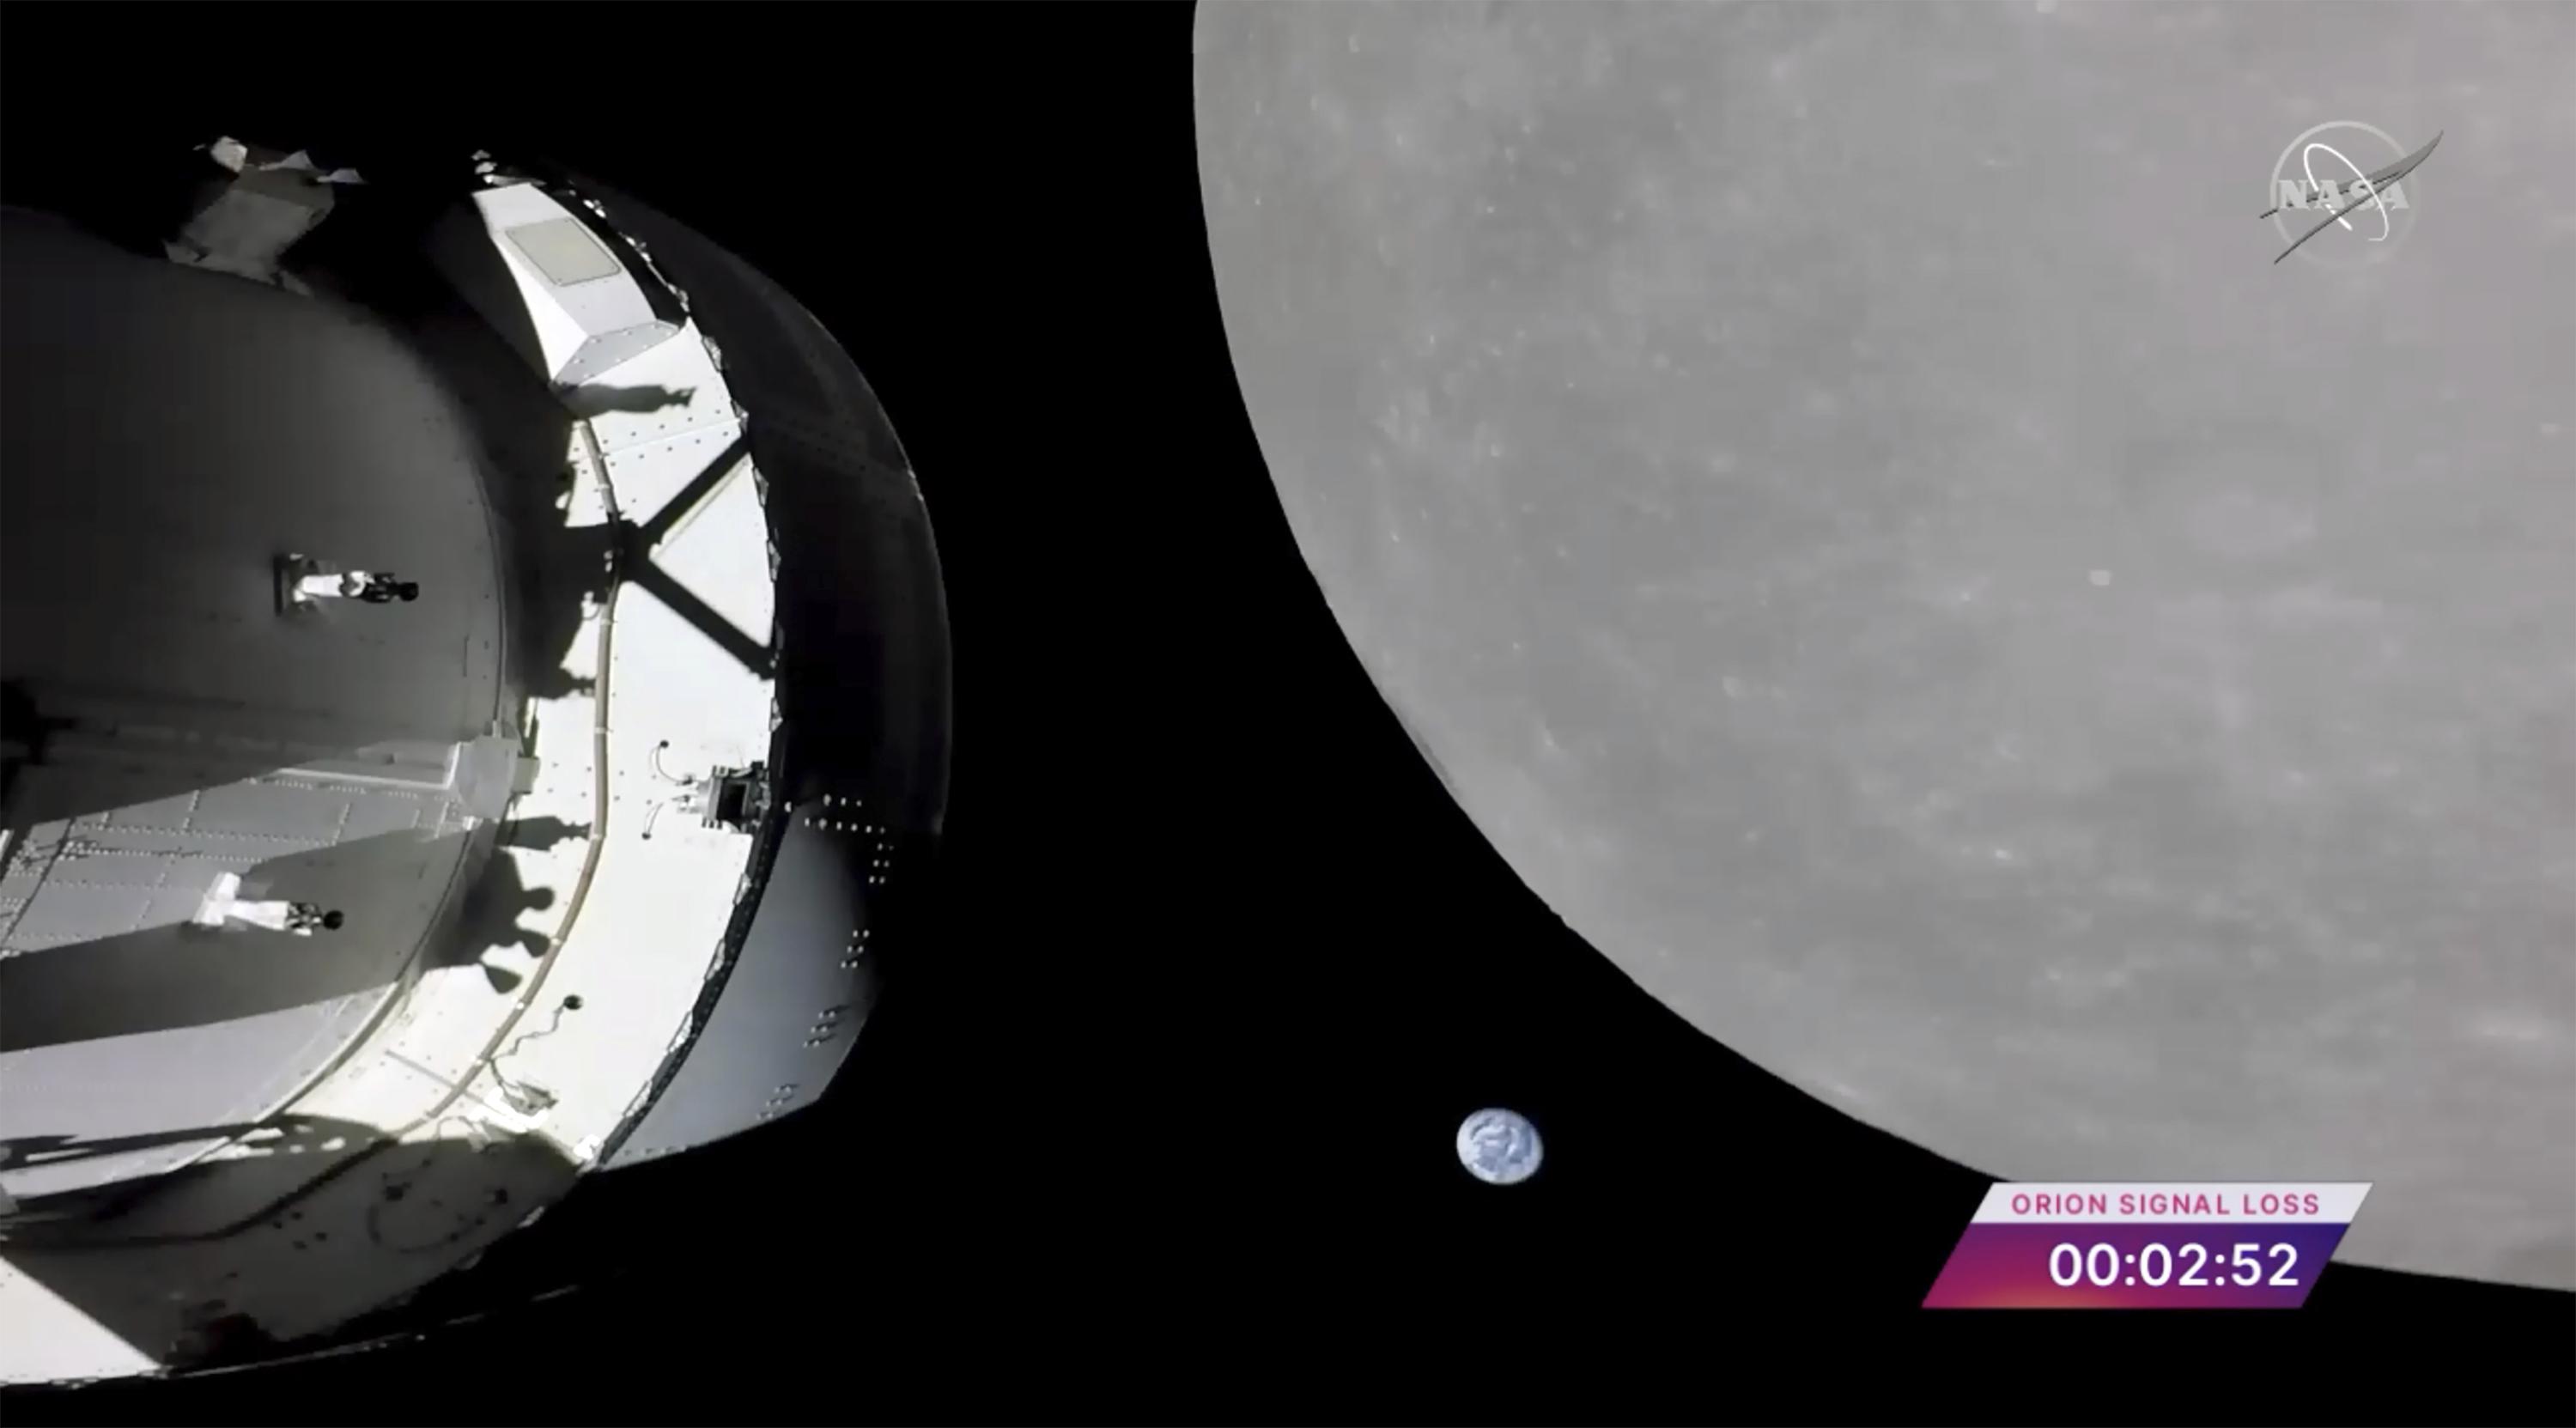 Kapsle NASA letí nad Měsícem, což je poslední velký krok před oběžnou dráhou Měsíce